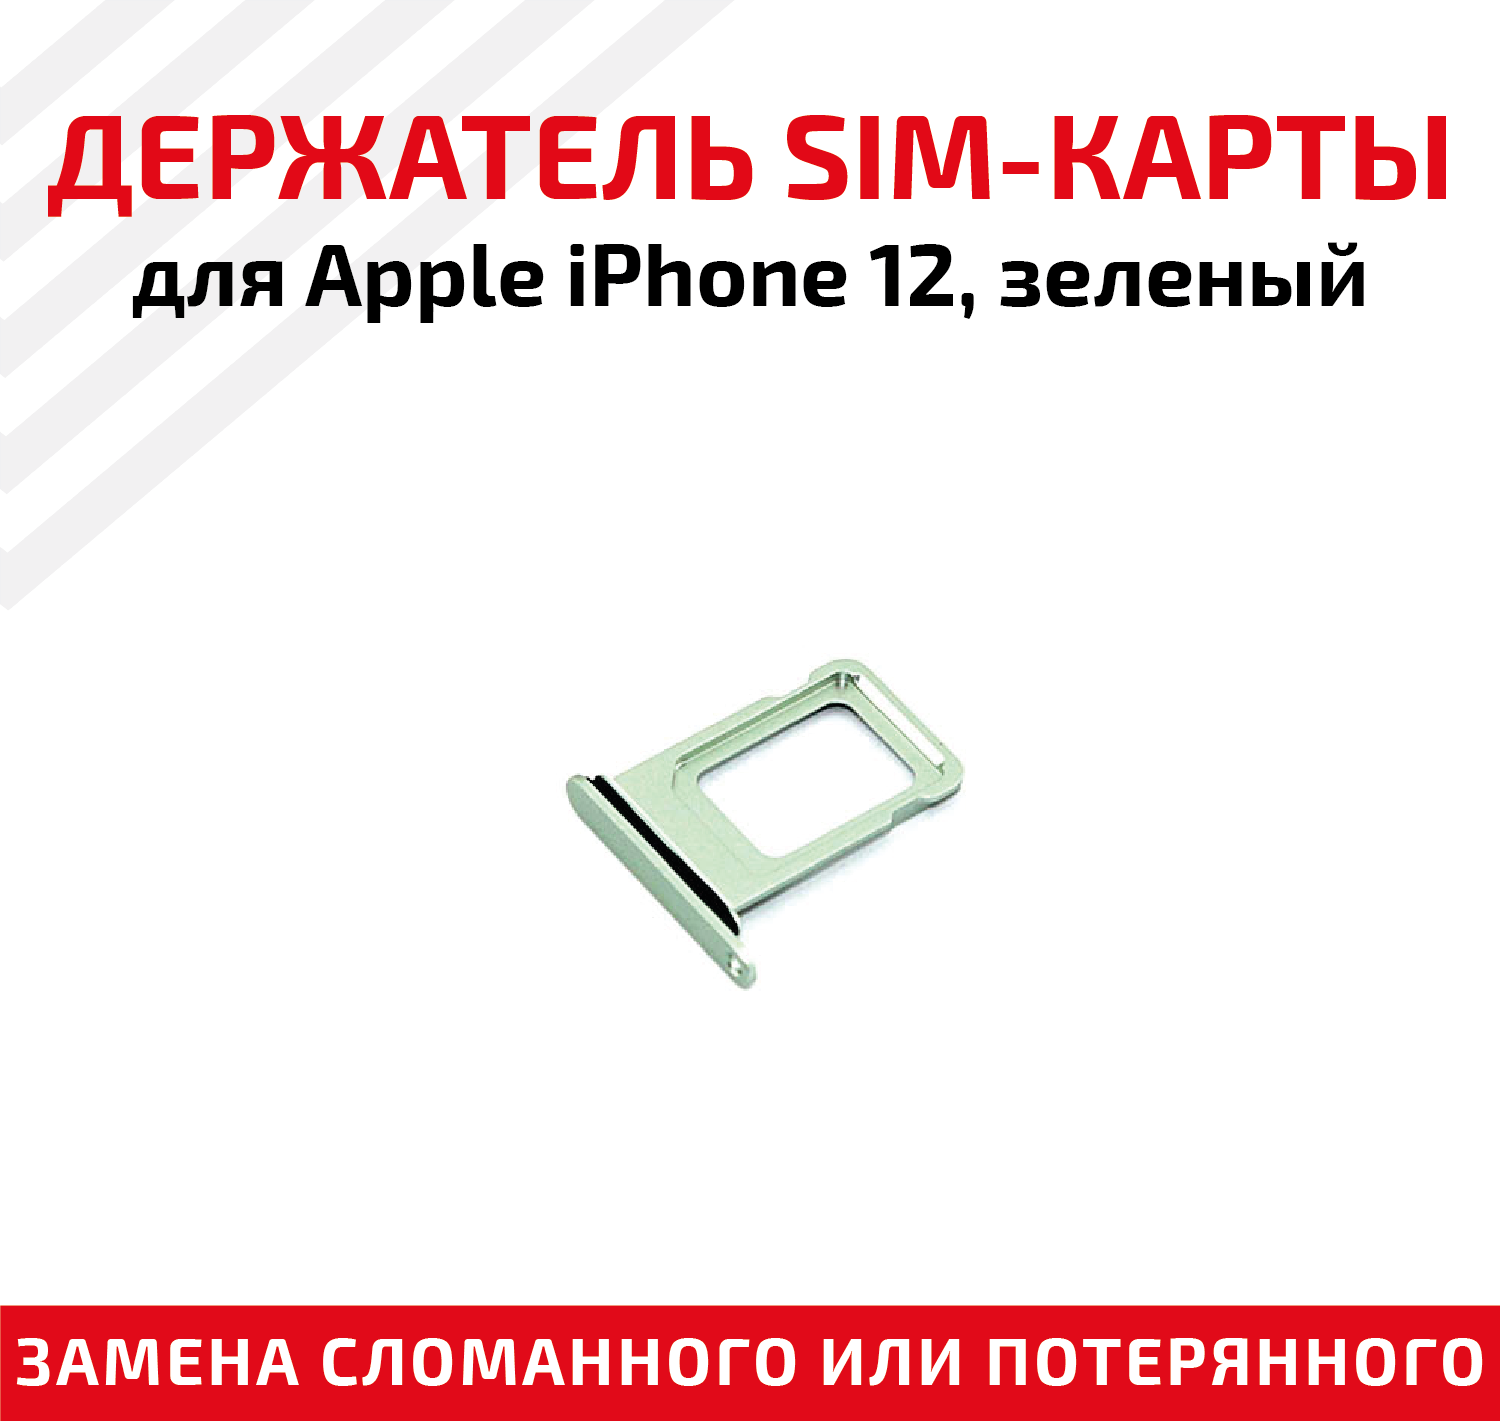 Лоток (держатель, контейнер, слот) SIM-карты для мобильного телефона (смартфона) Apple iPhone 12, зеленый